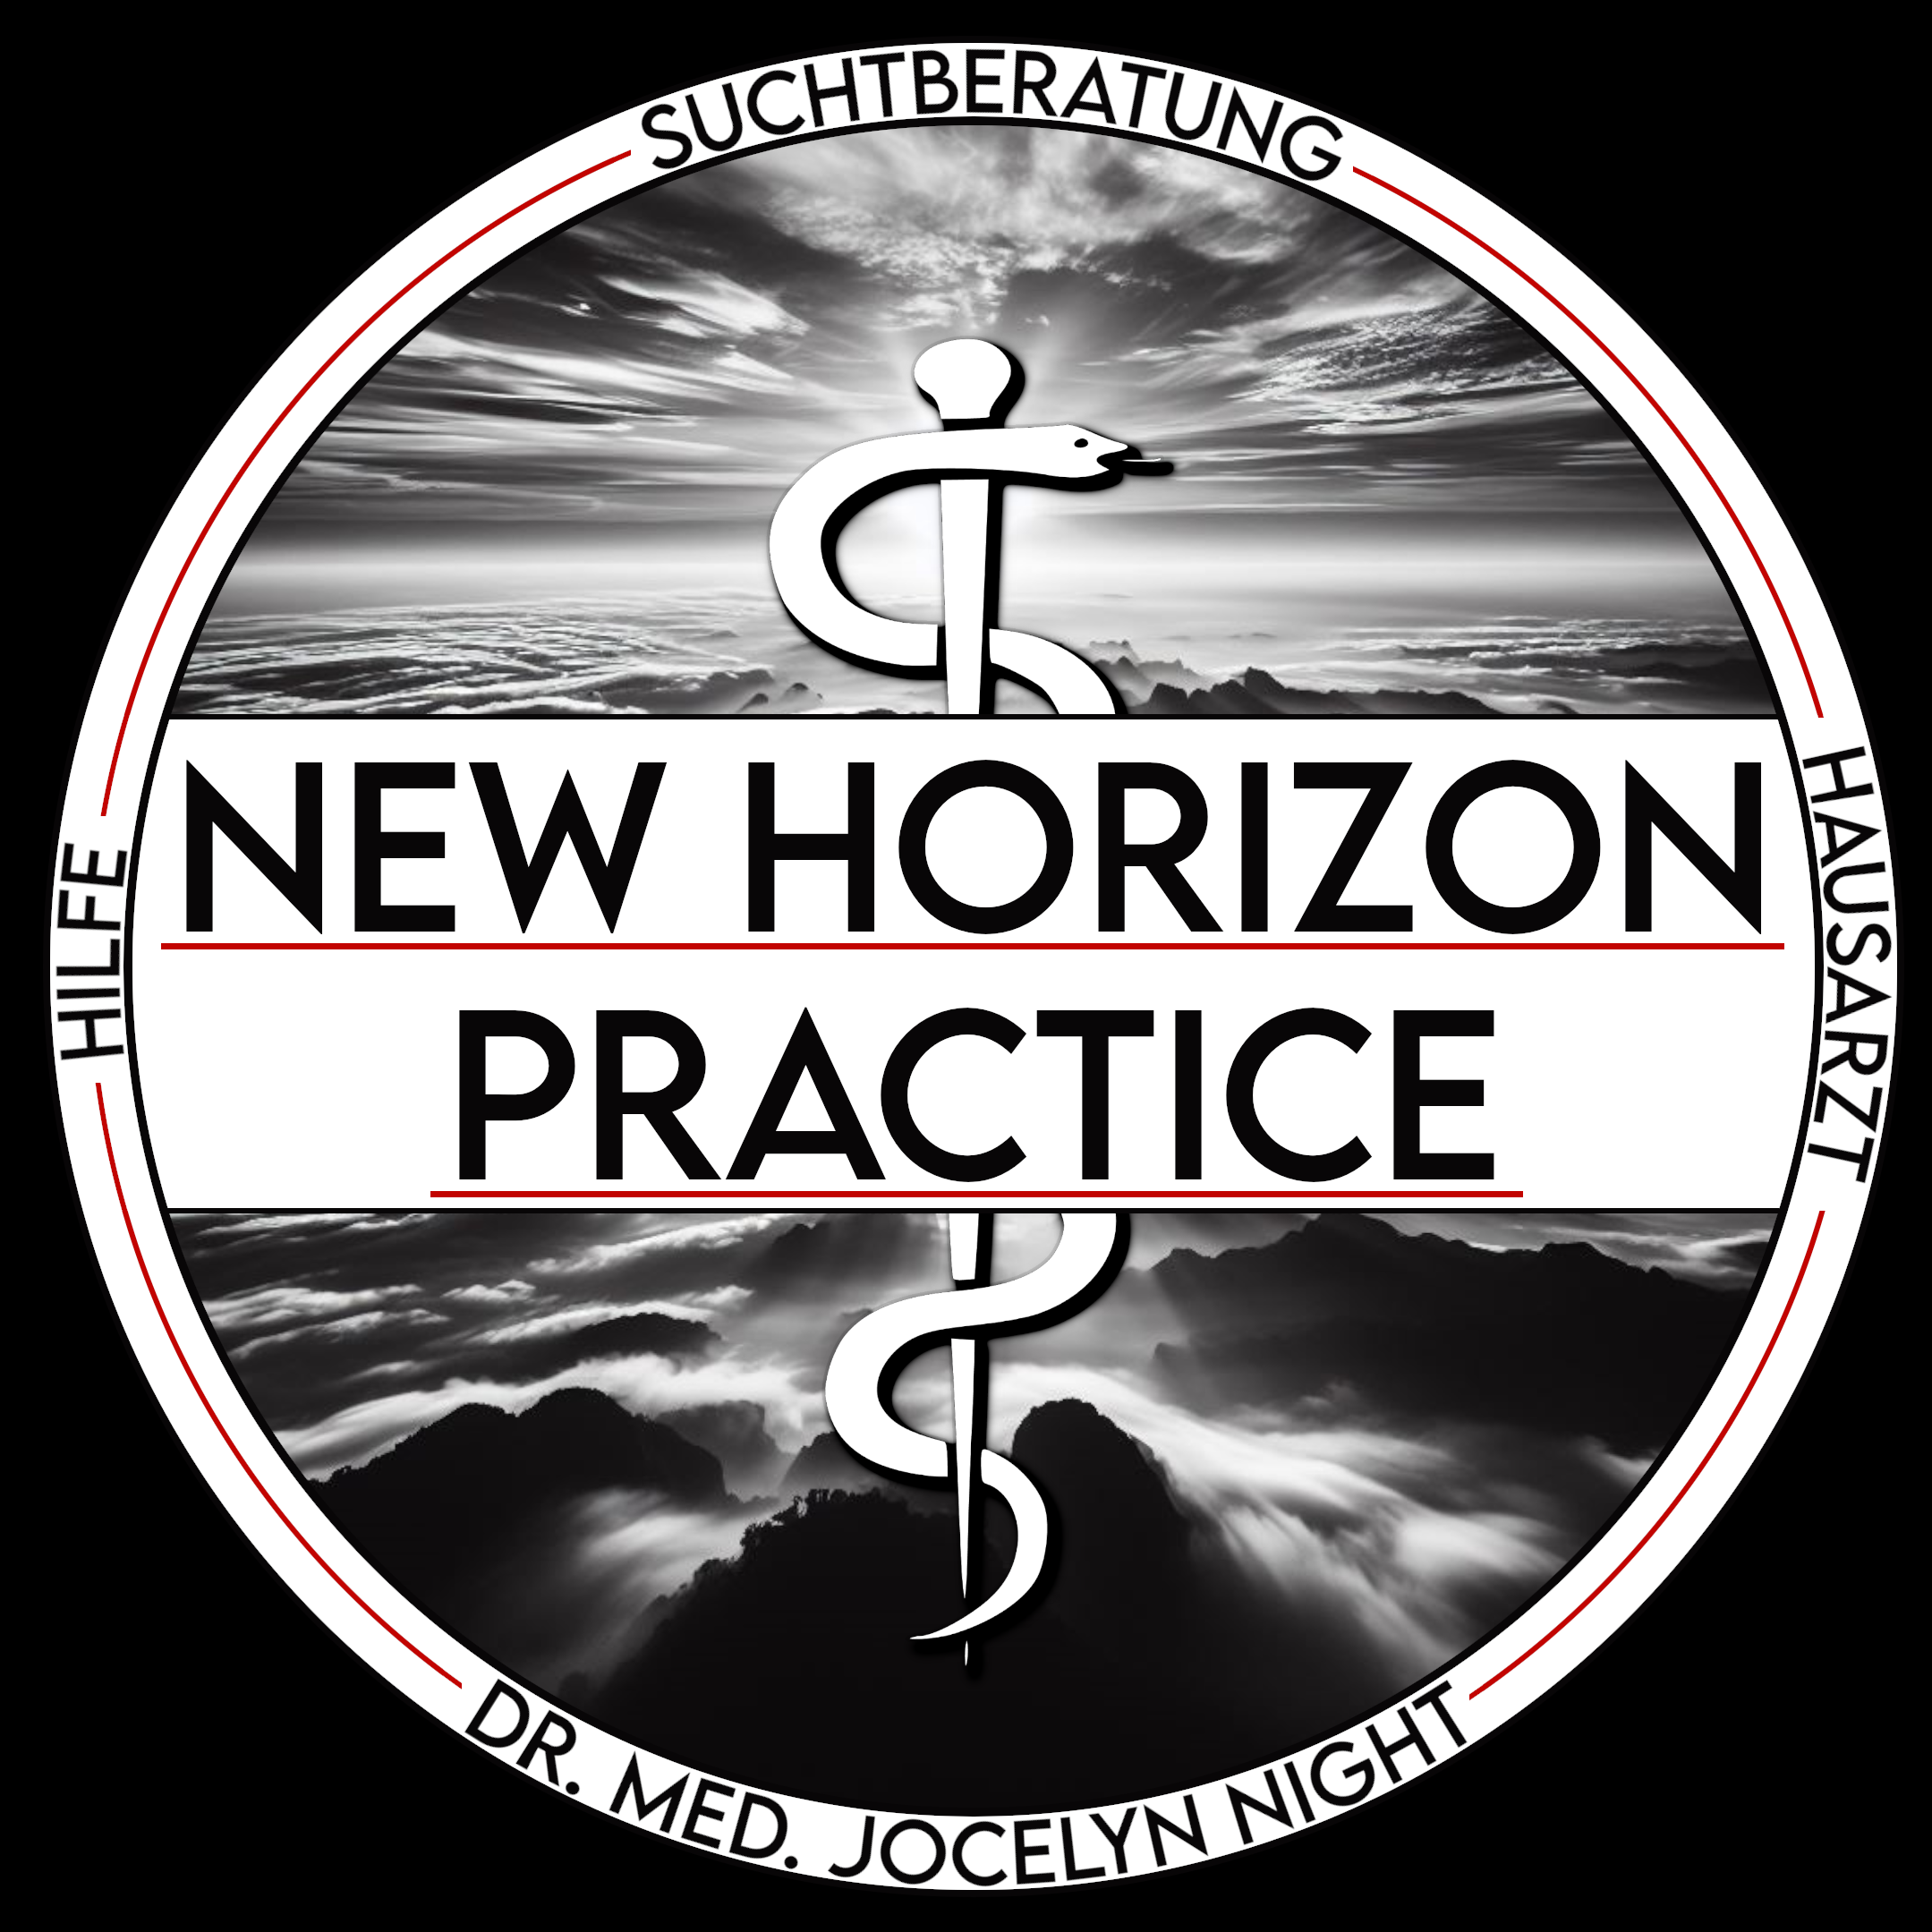 New Horizon Practice